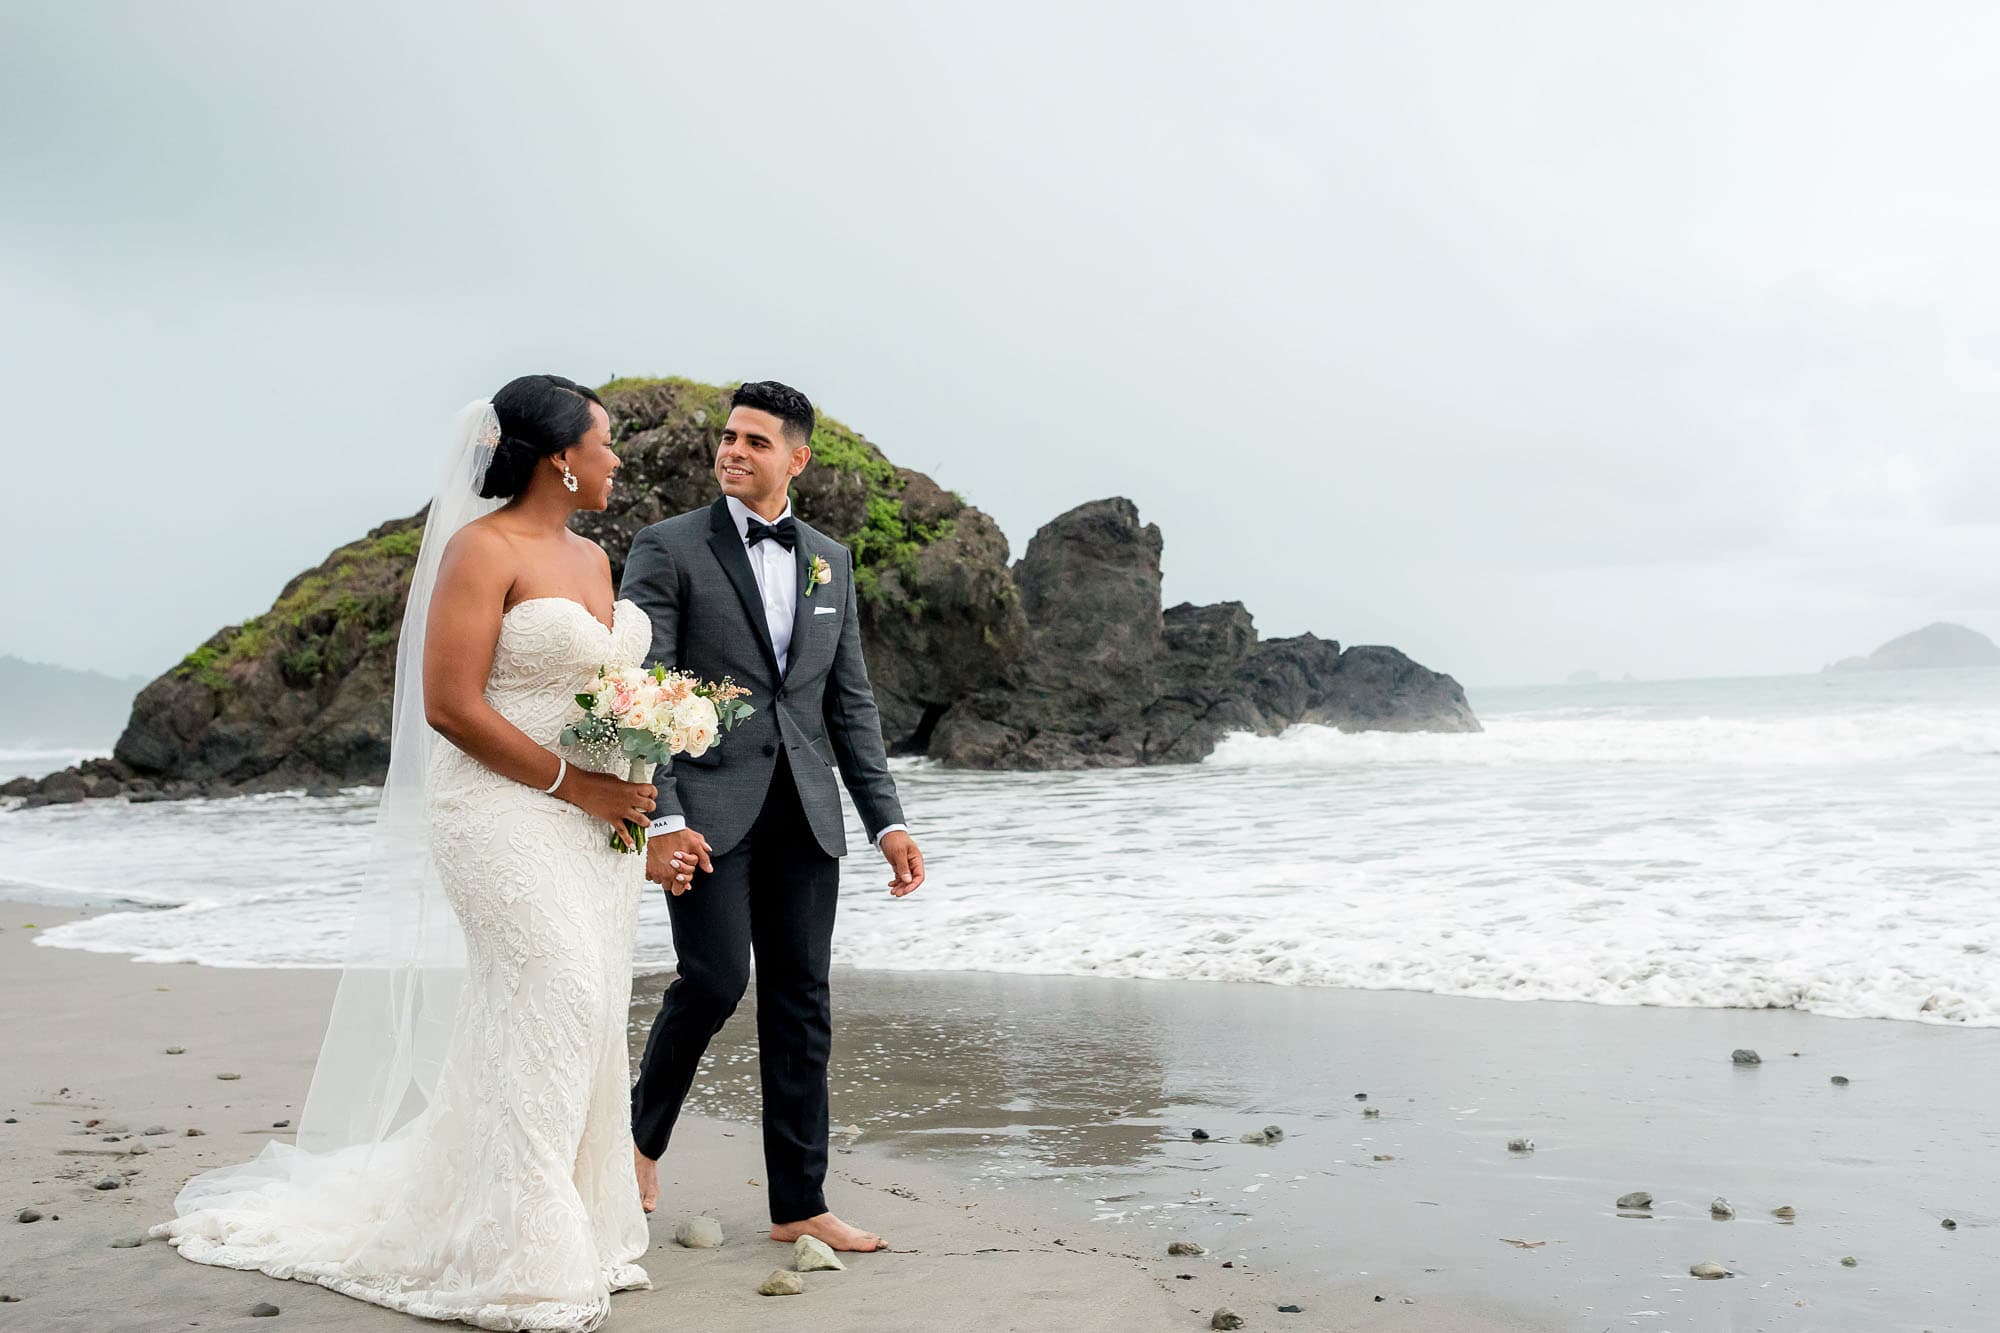 The couple on the beach: timeless wedding venue ideas